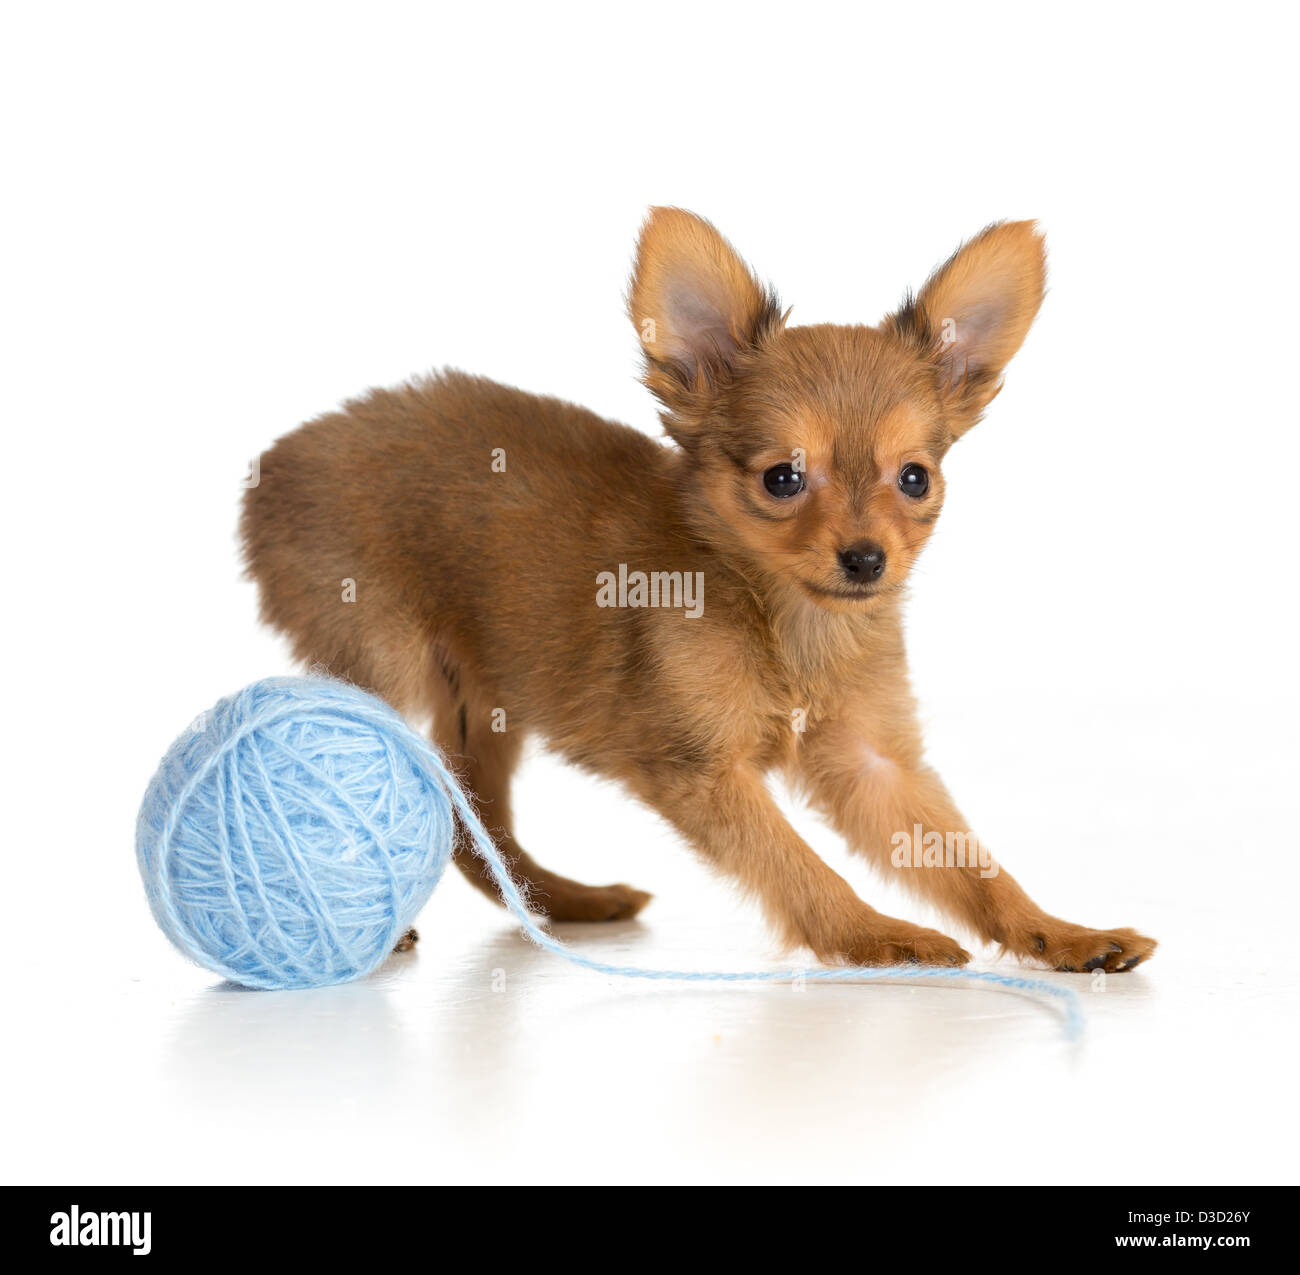 Federación de toy terrier cachorro jugando ovillo de lana Foto de stock